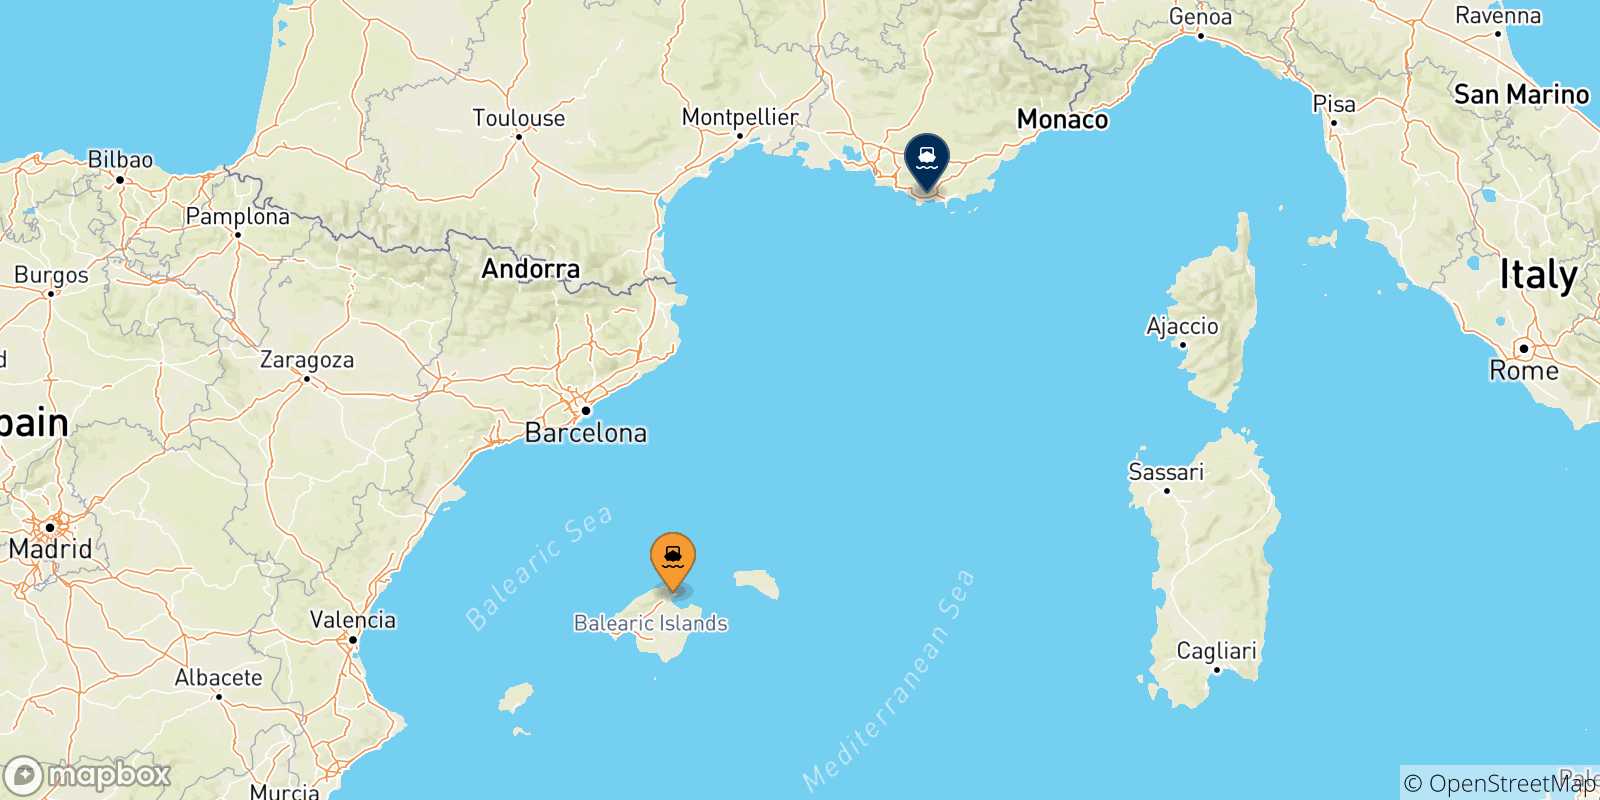 Mappa delle possibili rotte tra le Isole Baleari e la Francia